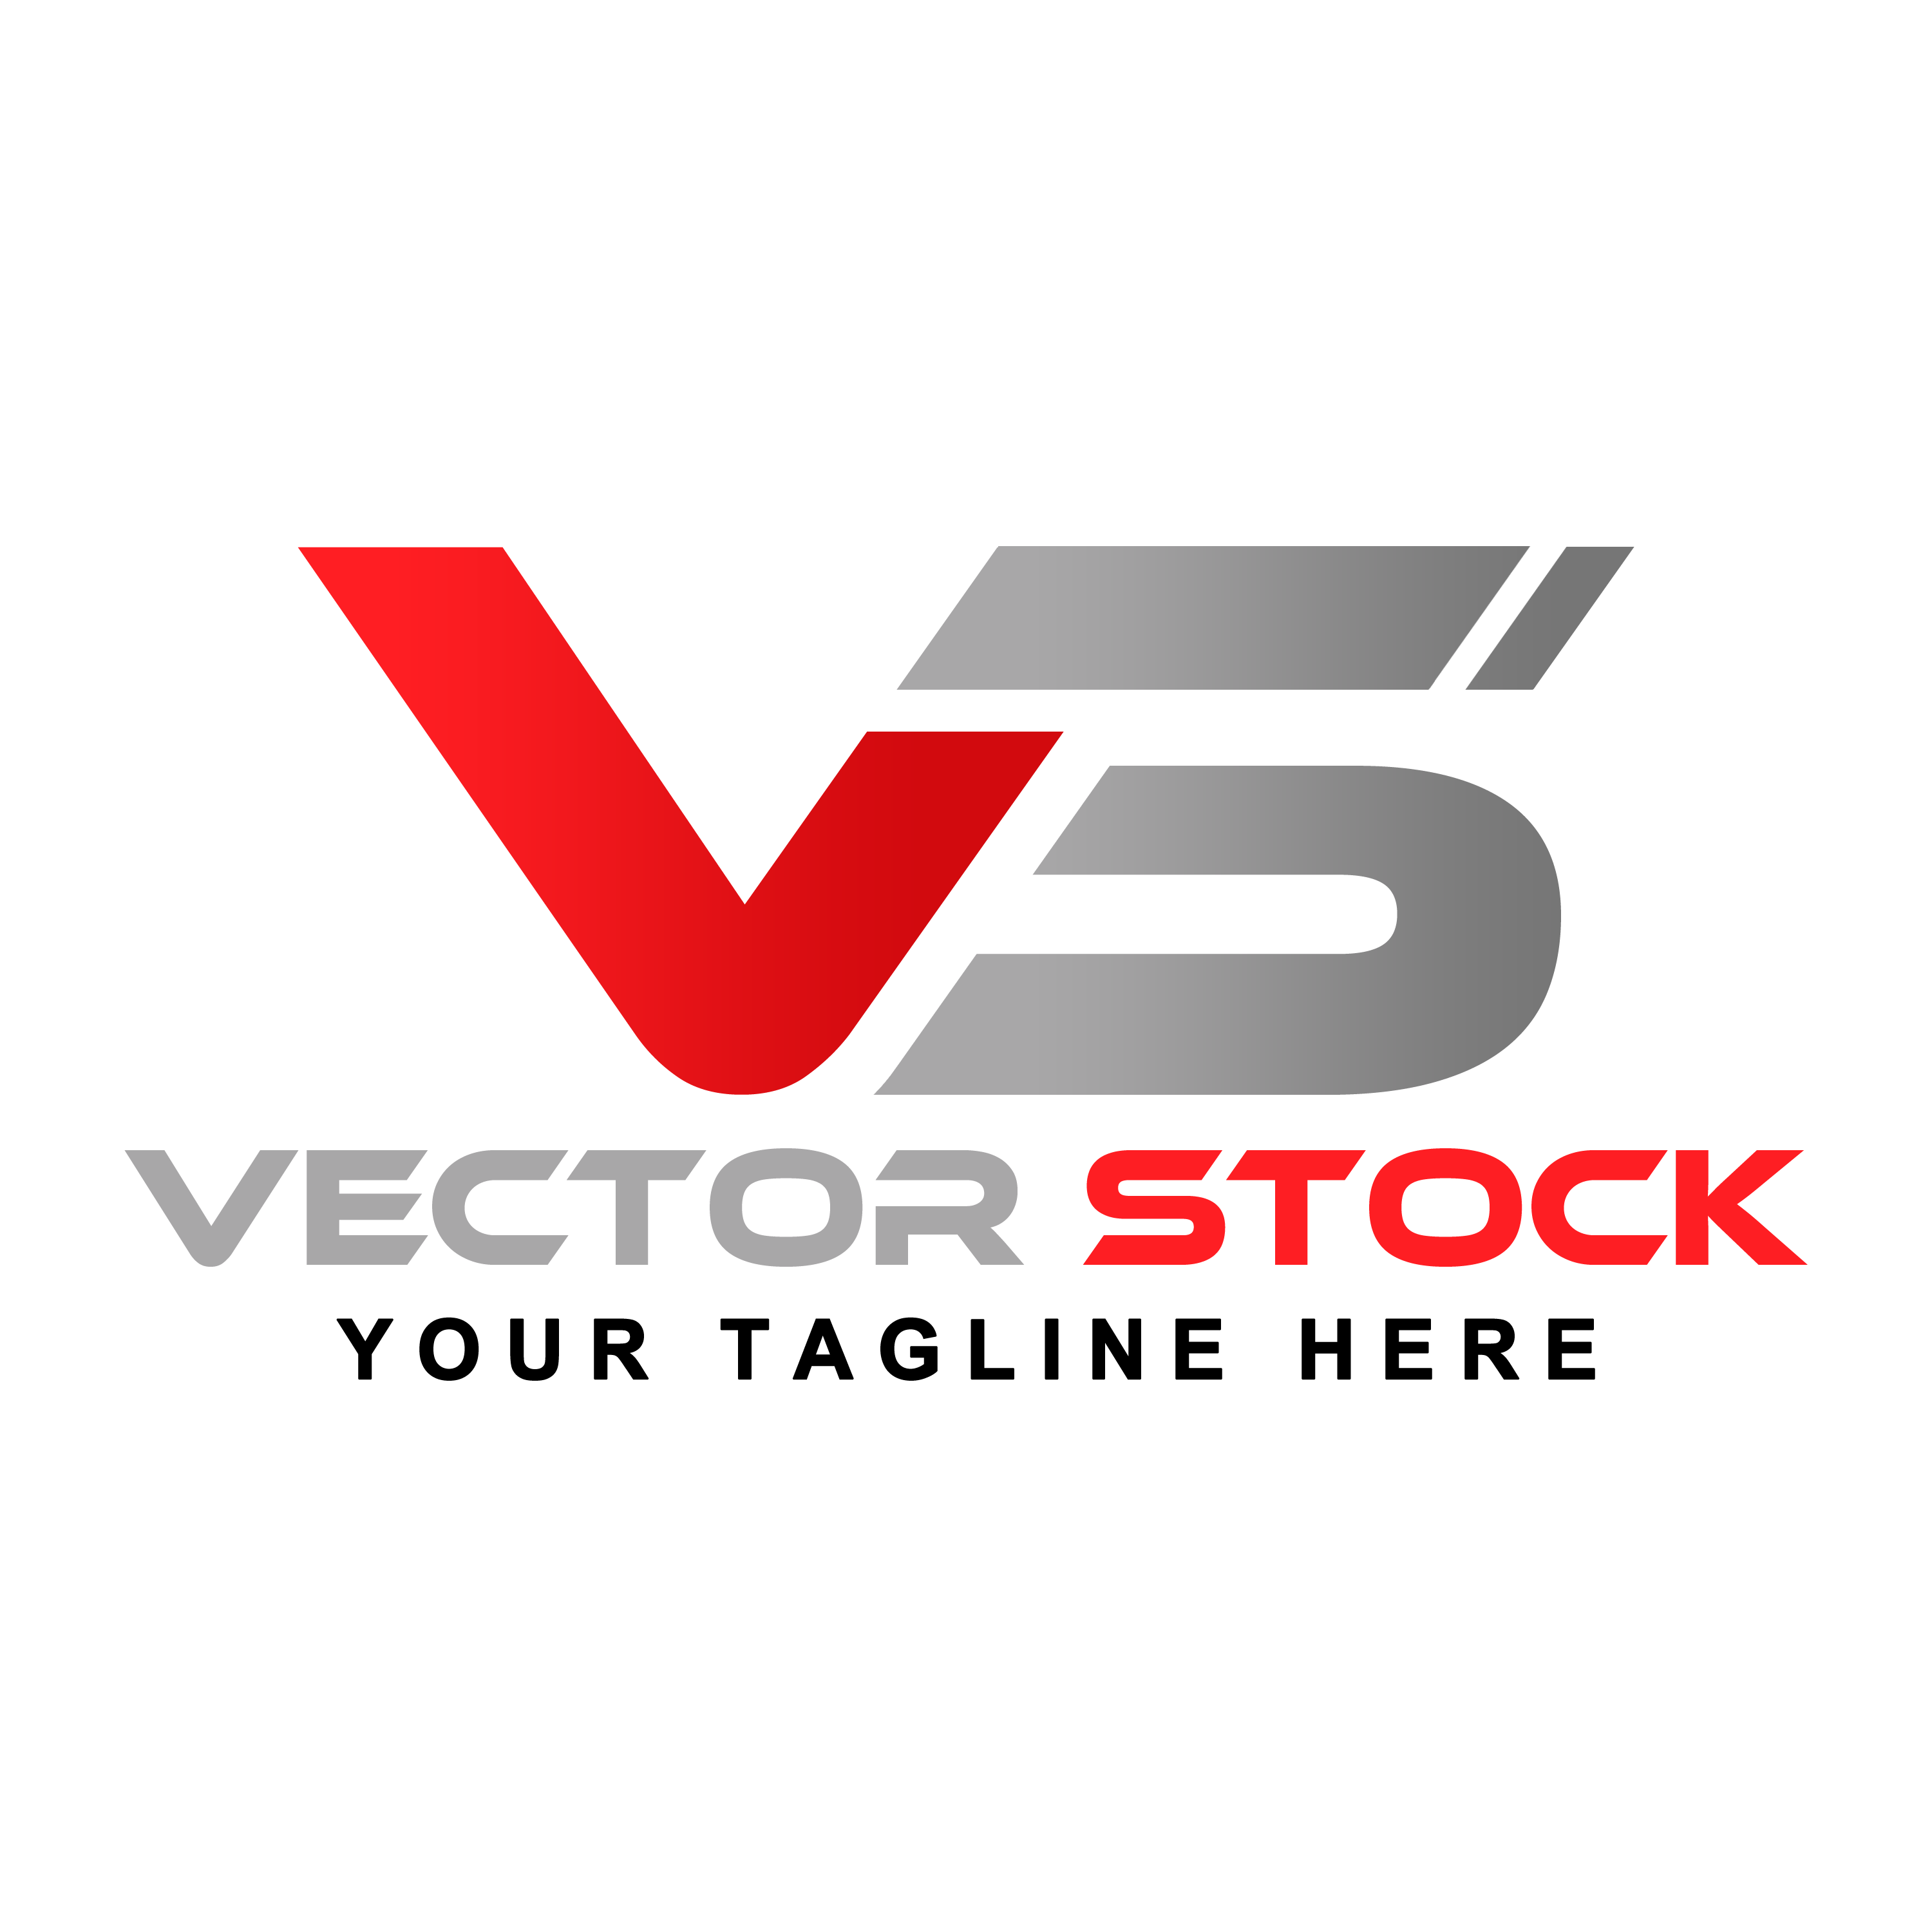 Transparent Logo - Free Vectors & PSDs to Download